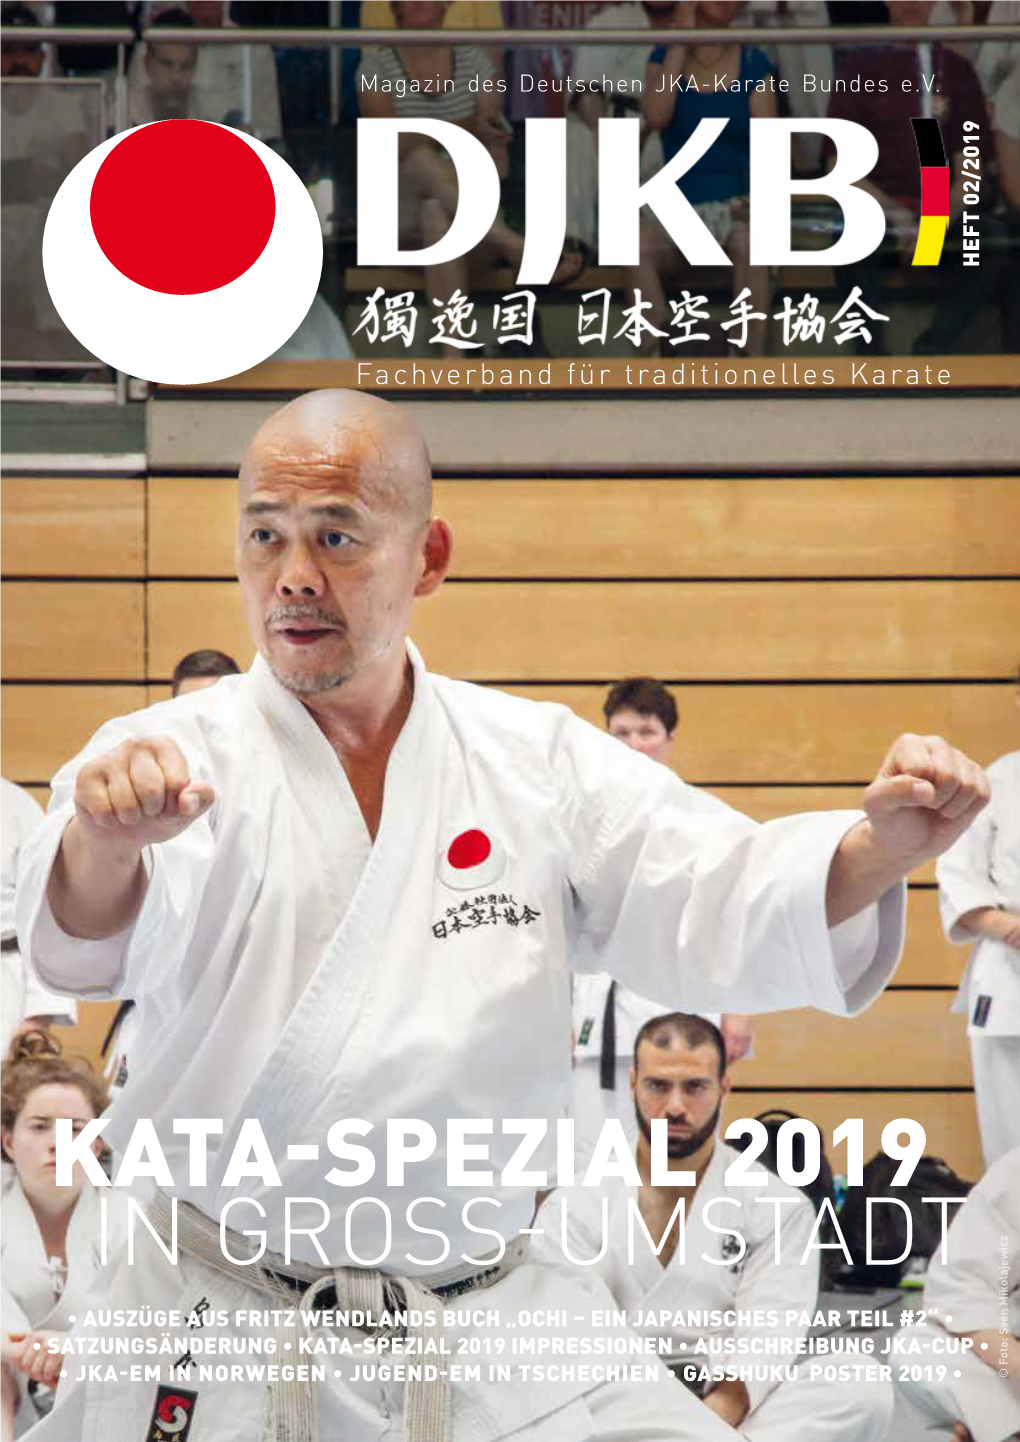 Kata-Spezial 2019 in Gross-Umstadt